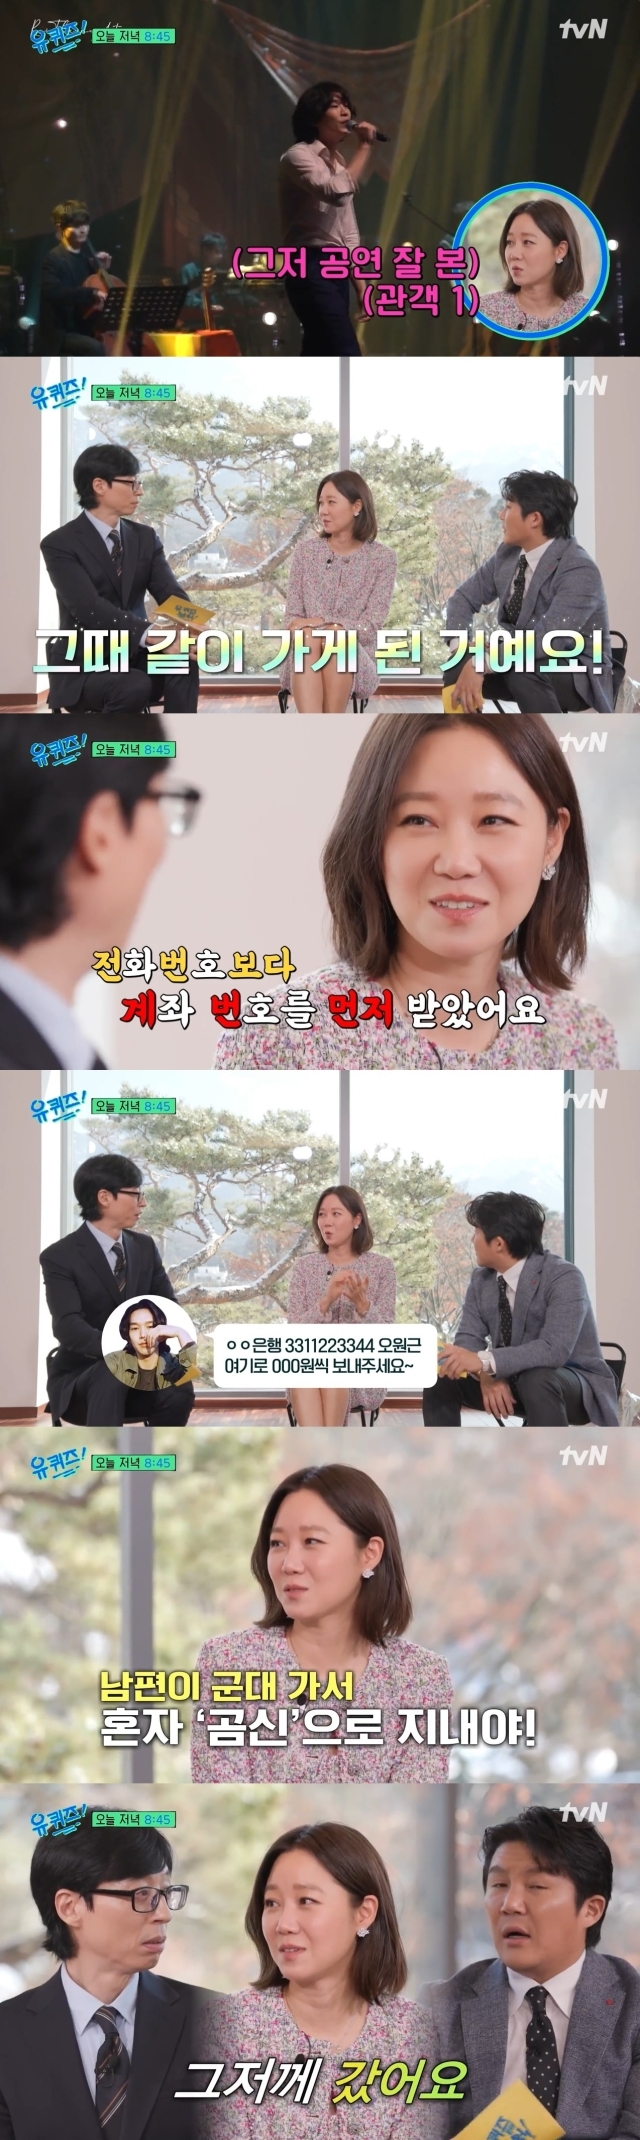 tvN '유 퀴즈 온 더 블럭' 선공개 영상 캡처